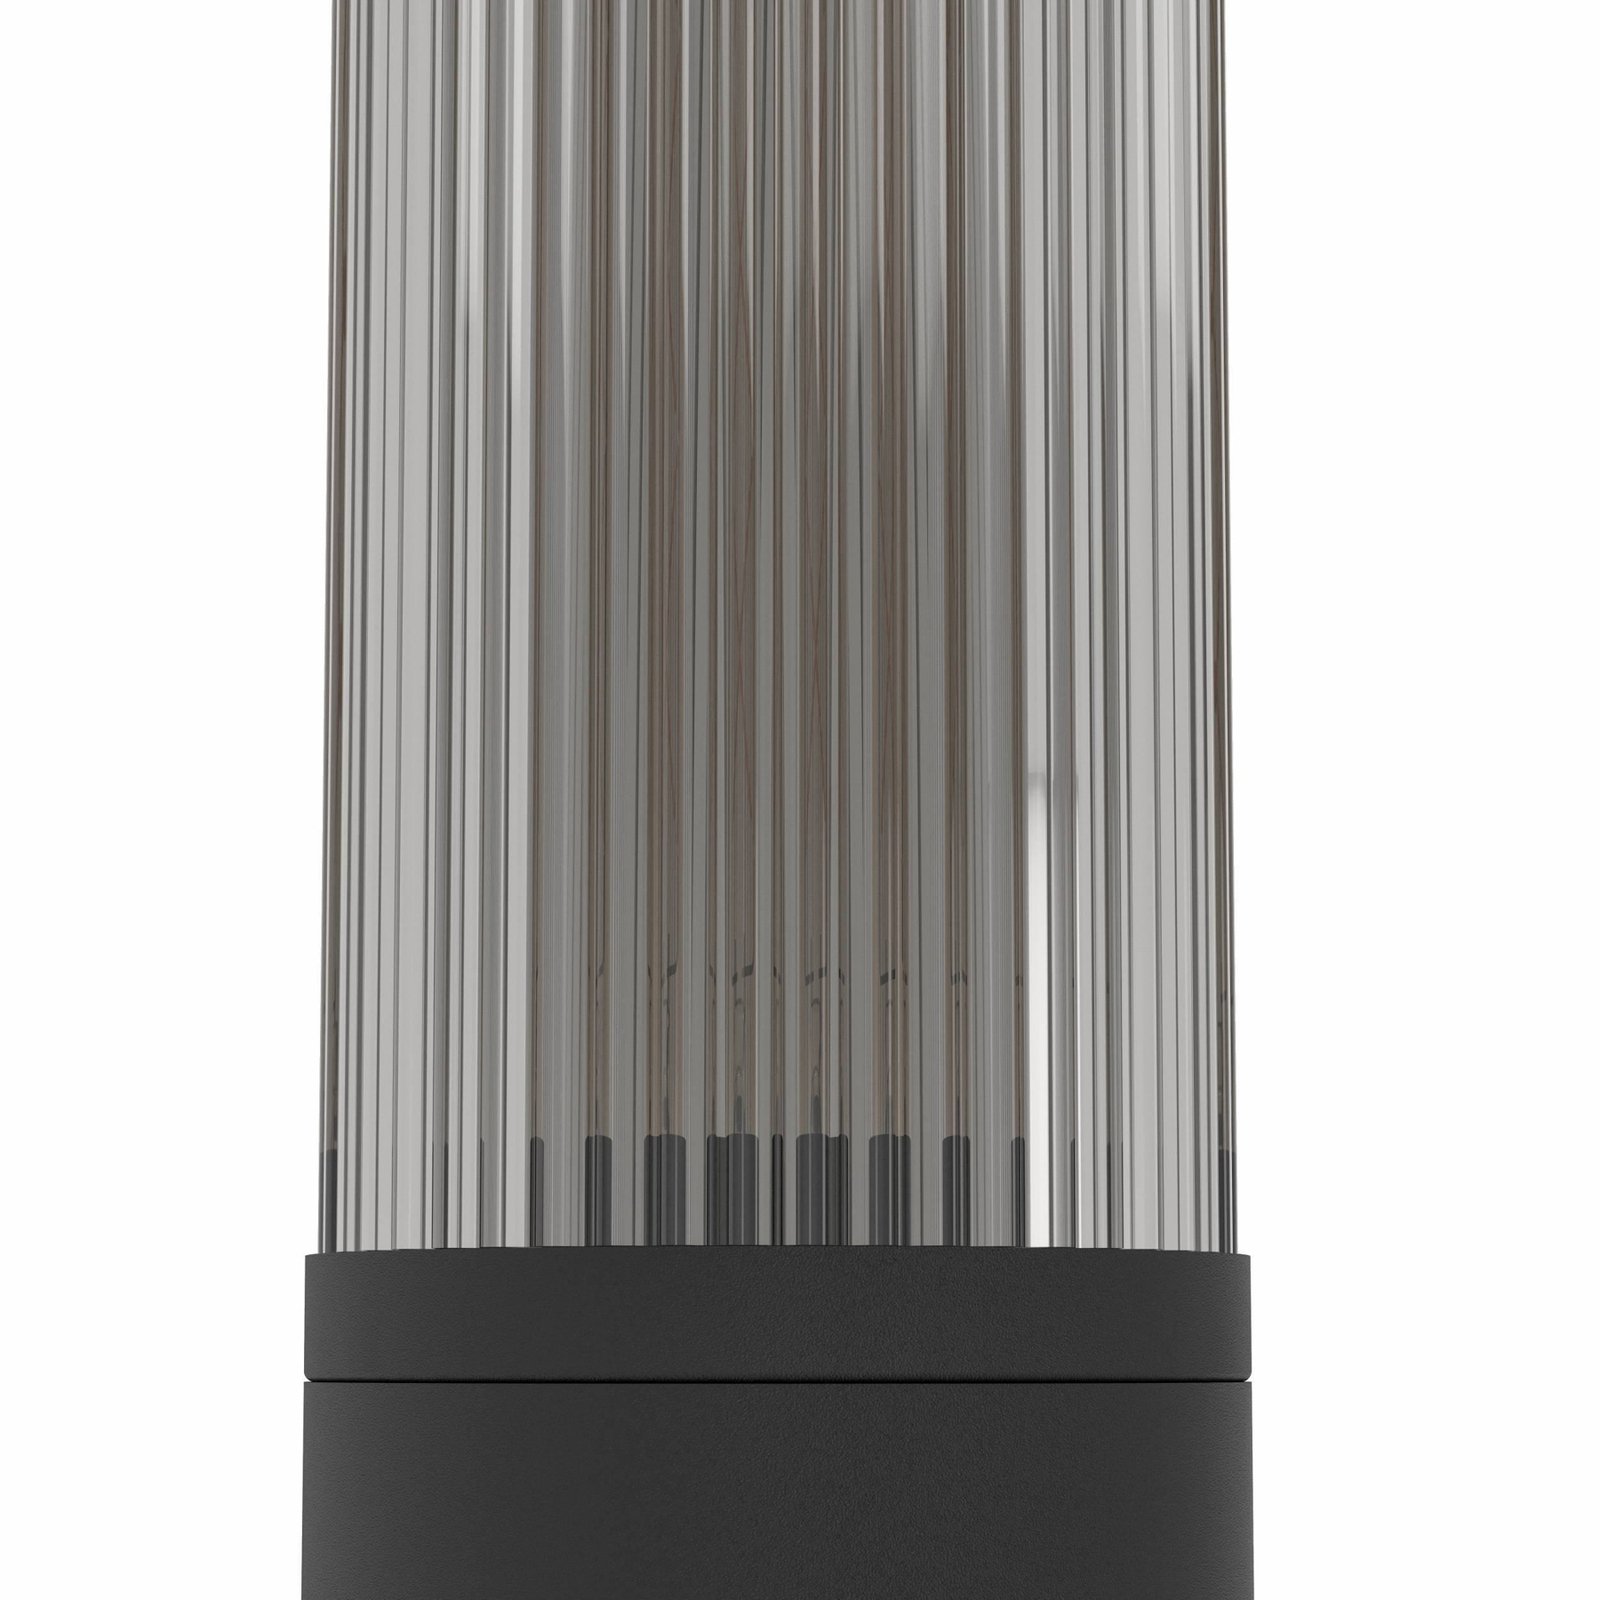 Zunanja stenska svetilka Salle, višina 31 cm, črna, aluminij